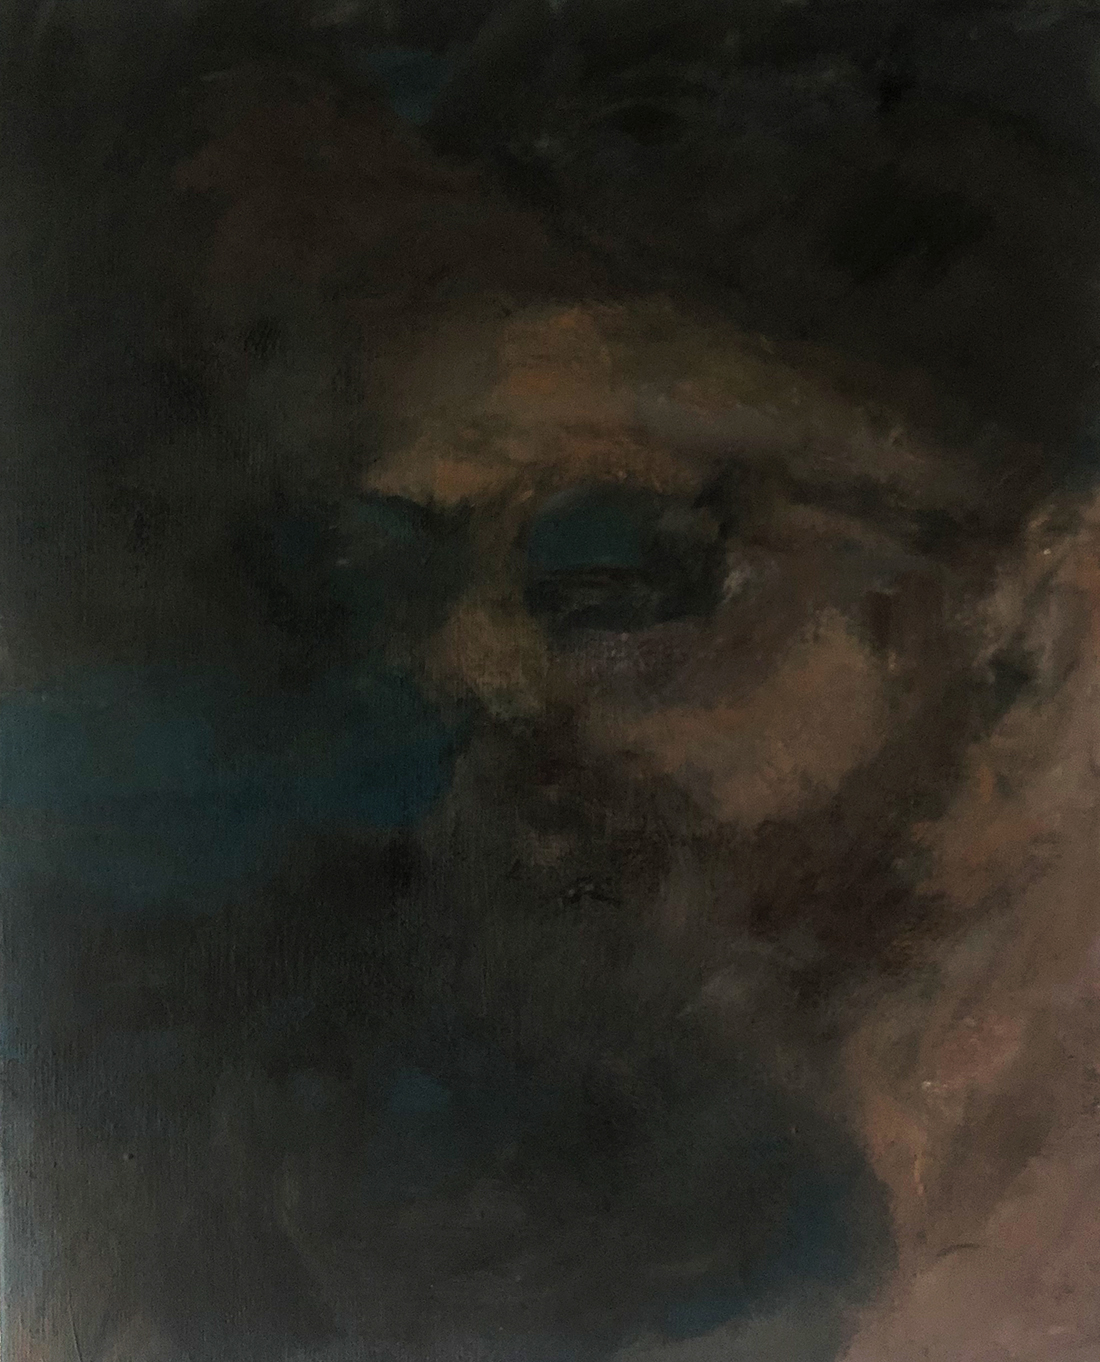 Ölmalerei von Nicole Sacher, welches ein abstraktes Portrait darstellt